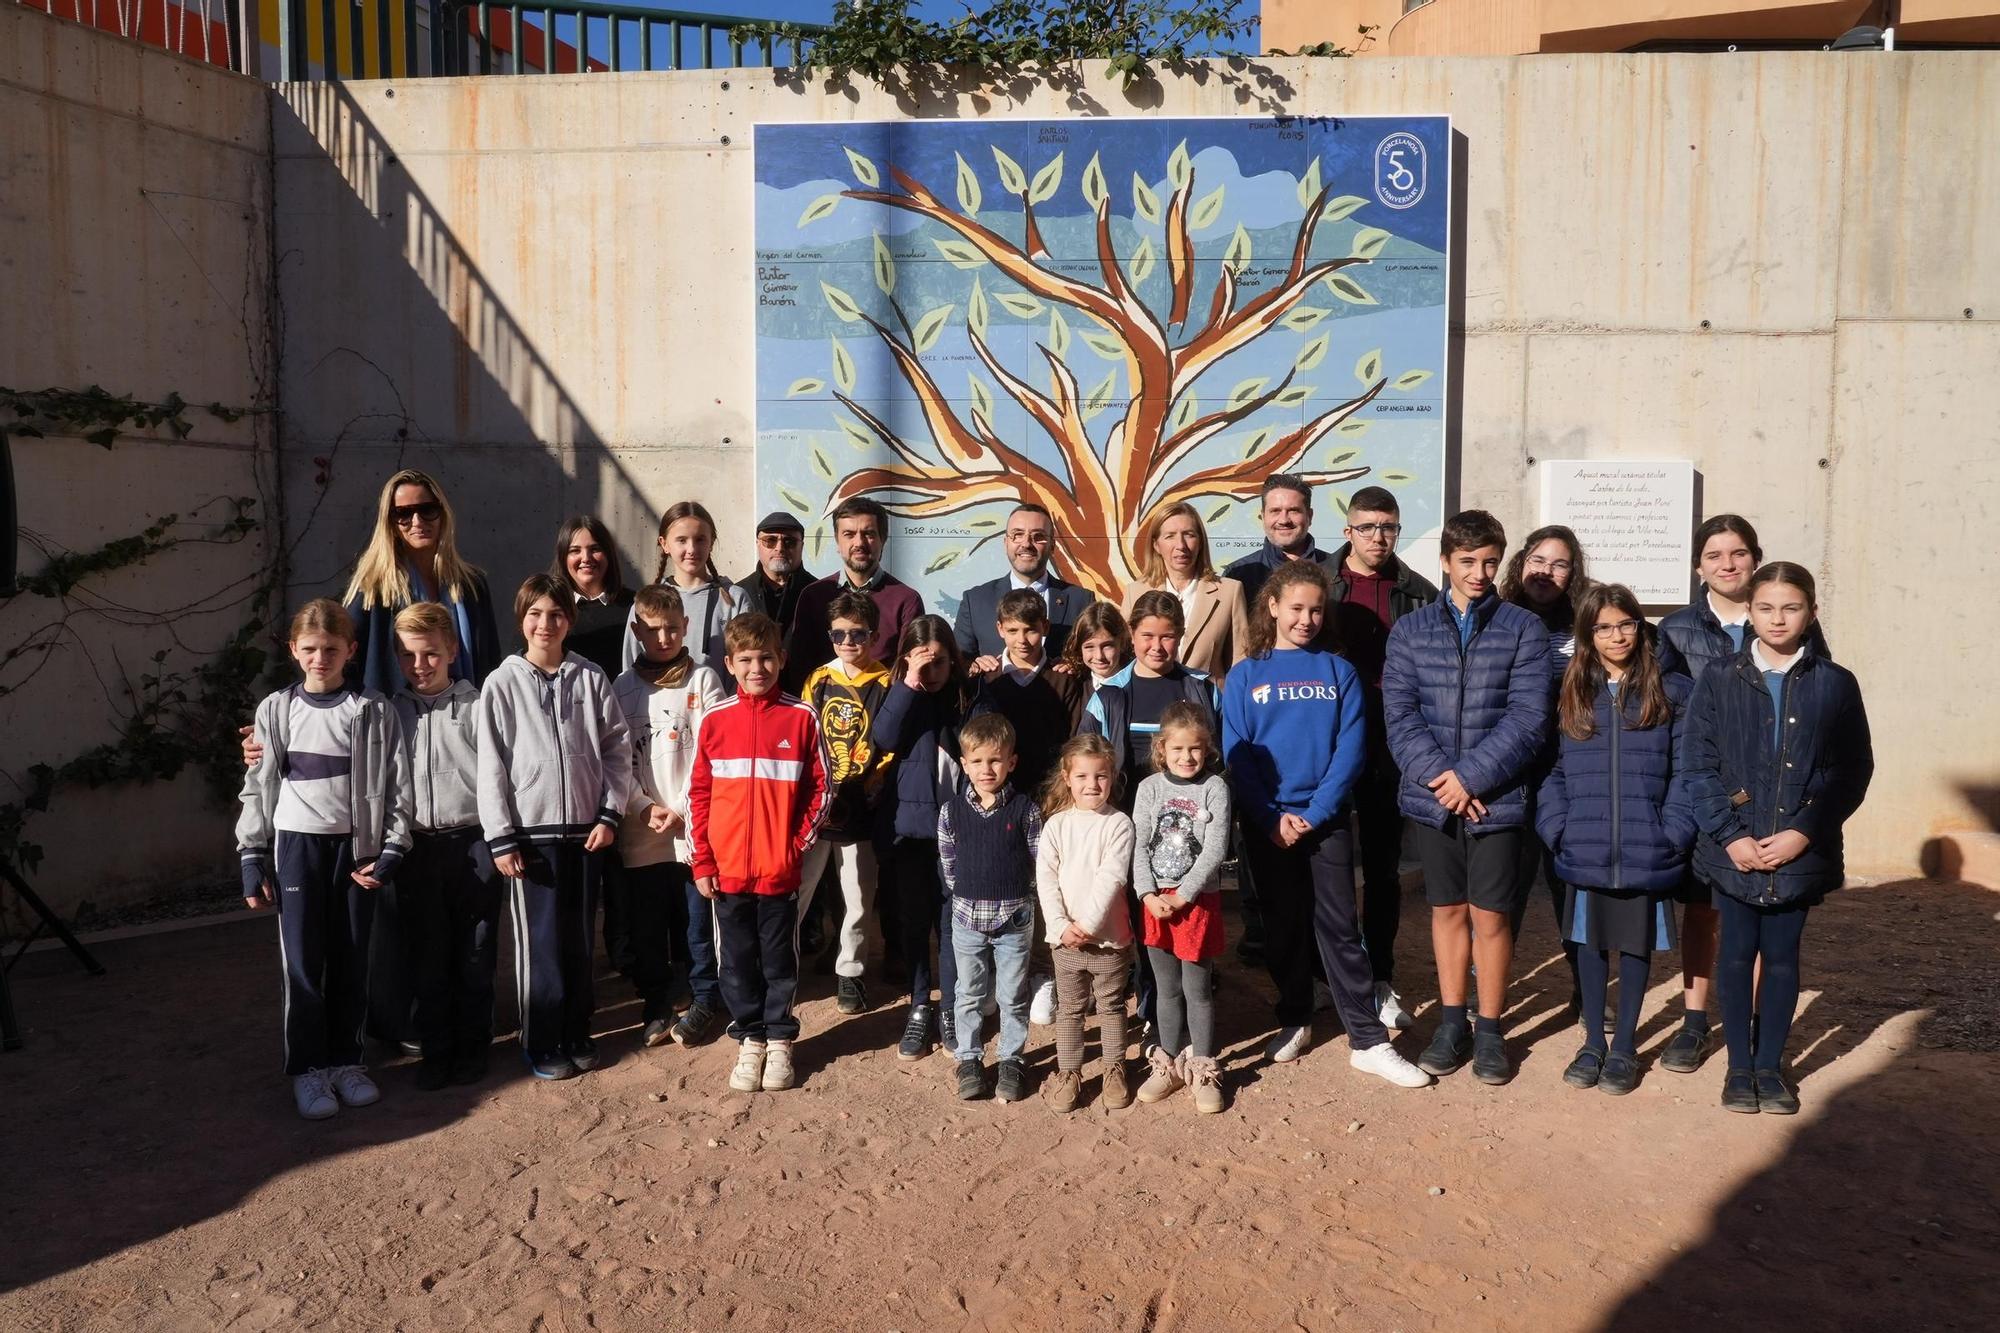 Las imágenes del mural del 50º aniversario de Porcelanosa en el Molí la Vila